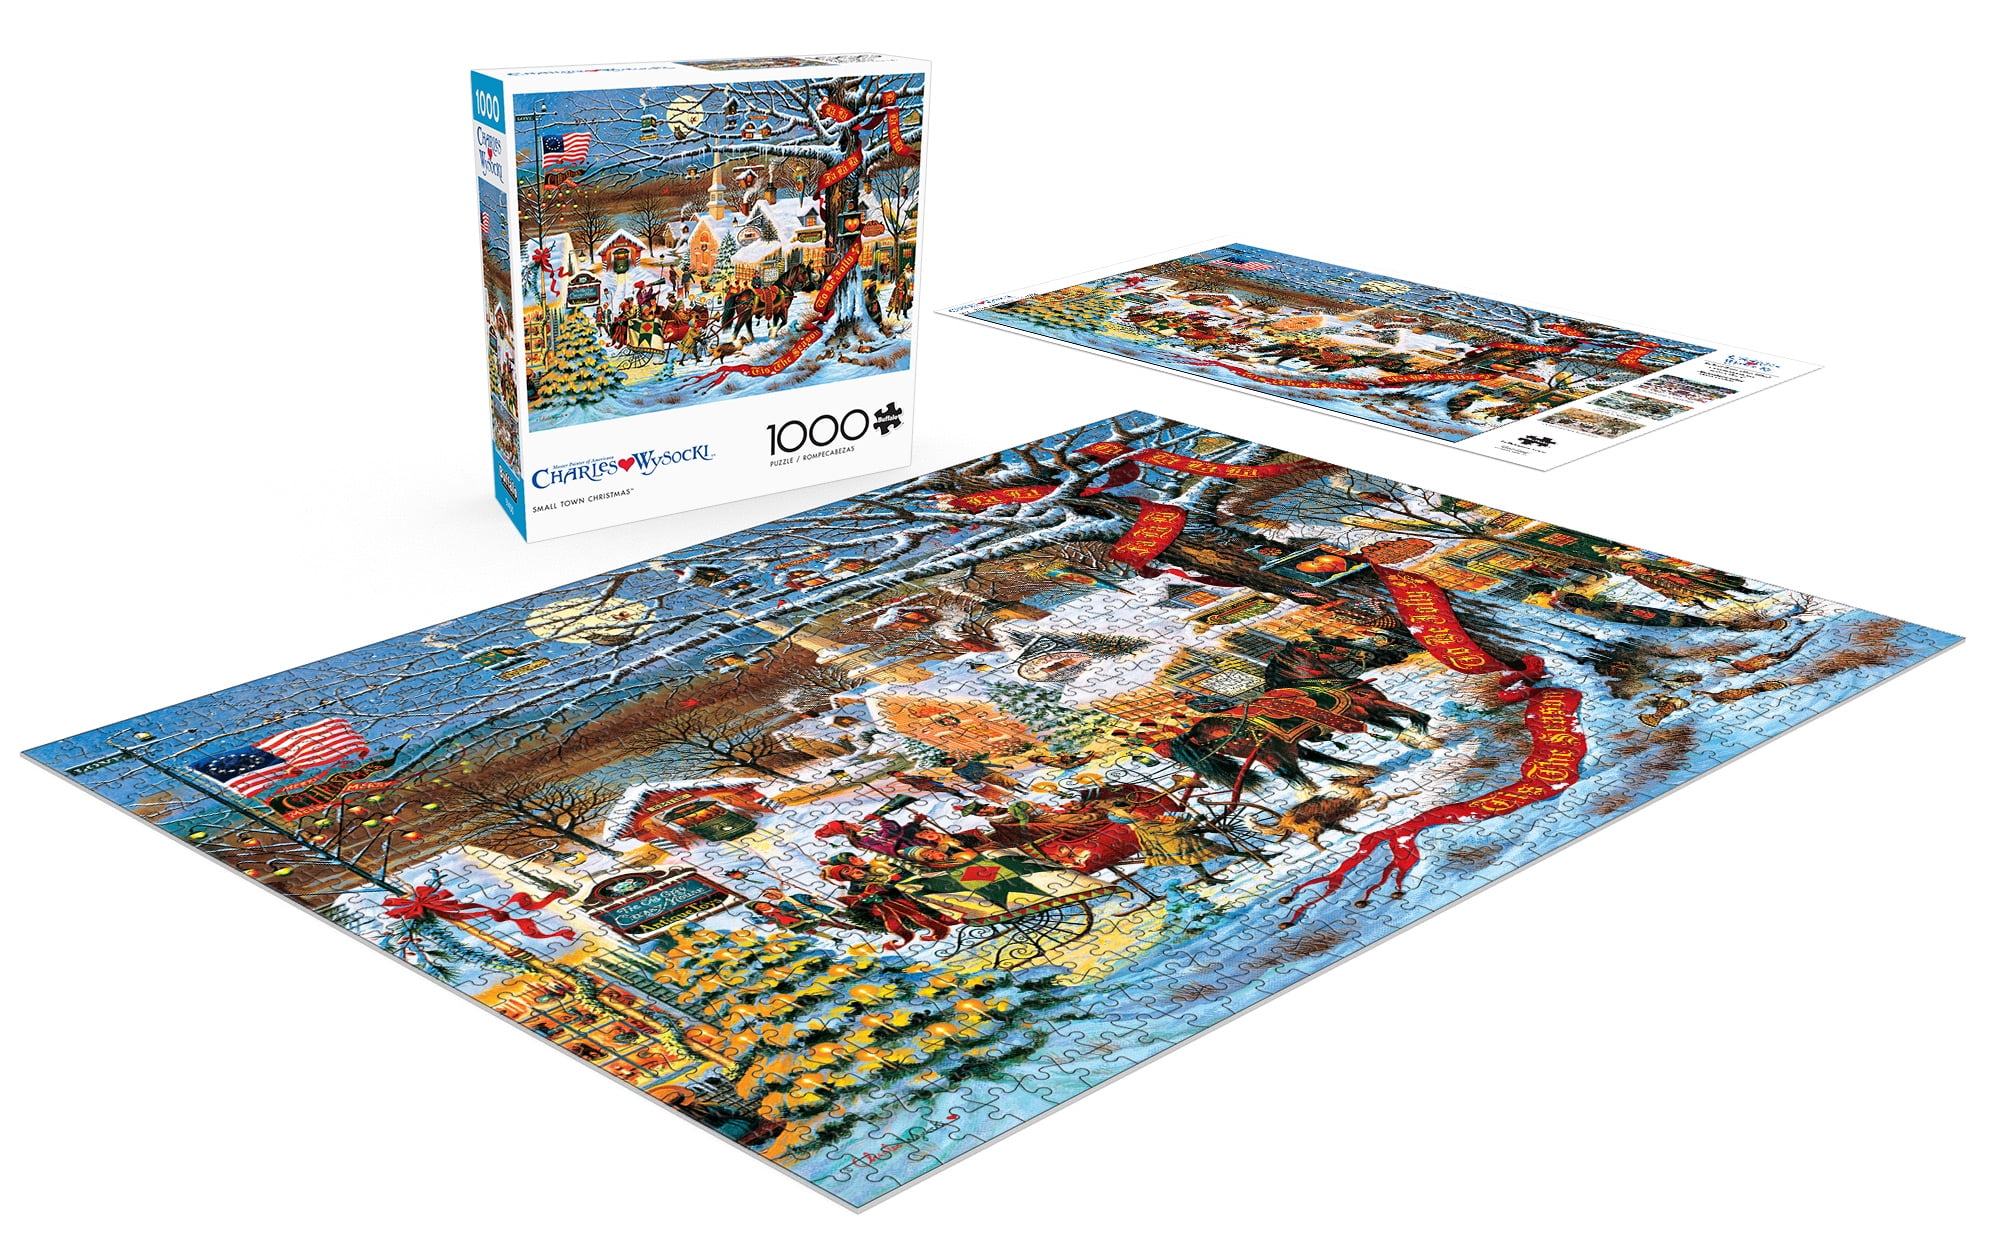 Pickforupuzzle® Christmas Charles Wysocki Jigsaw Puzzles 1000 Piece